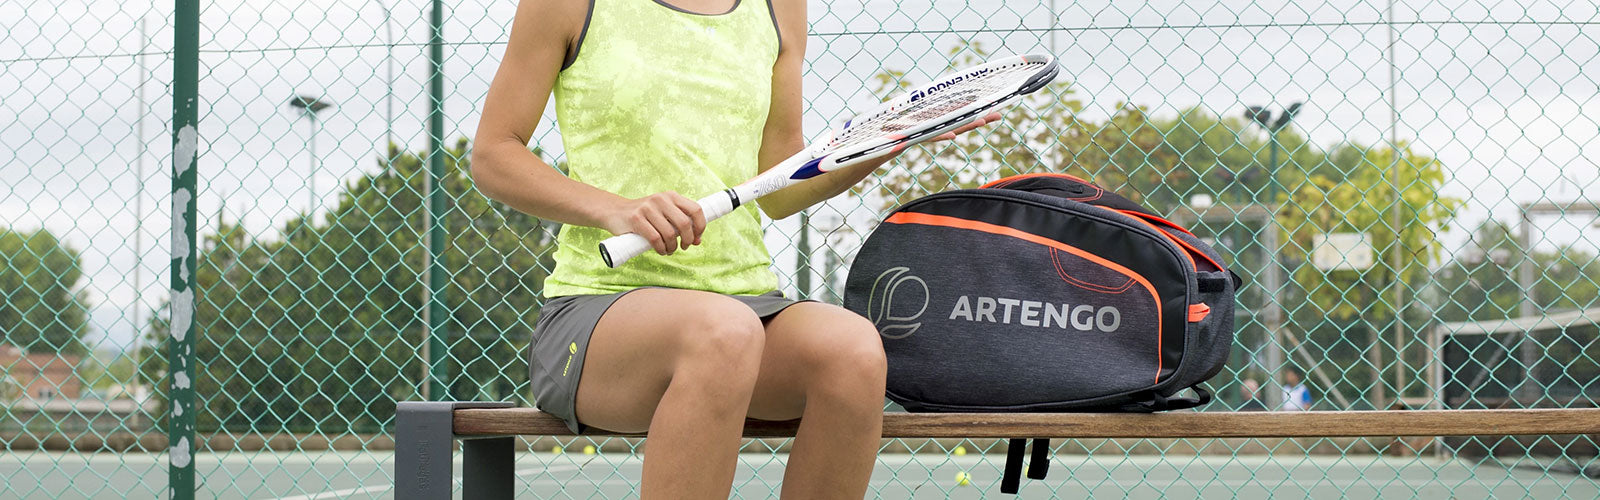 テニス | バッグとその他